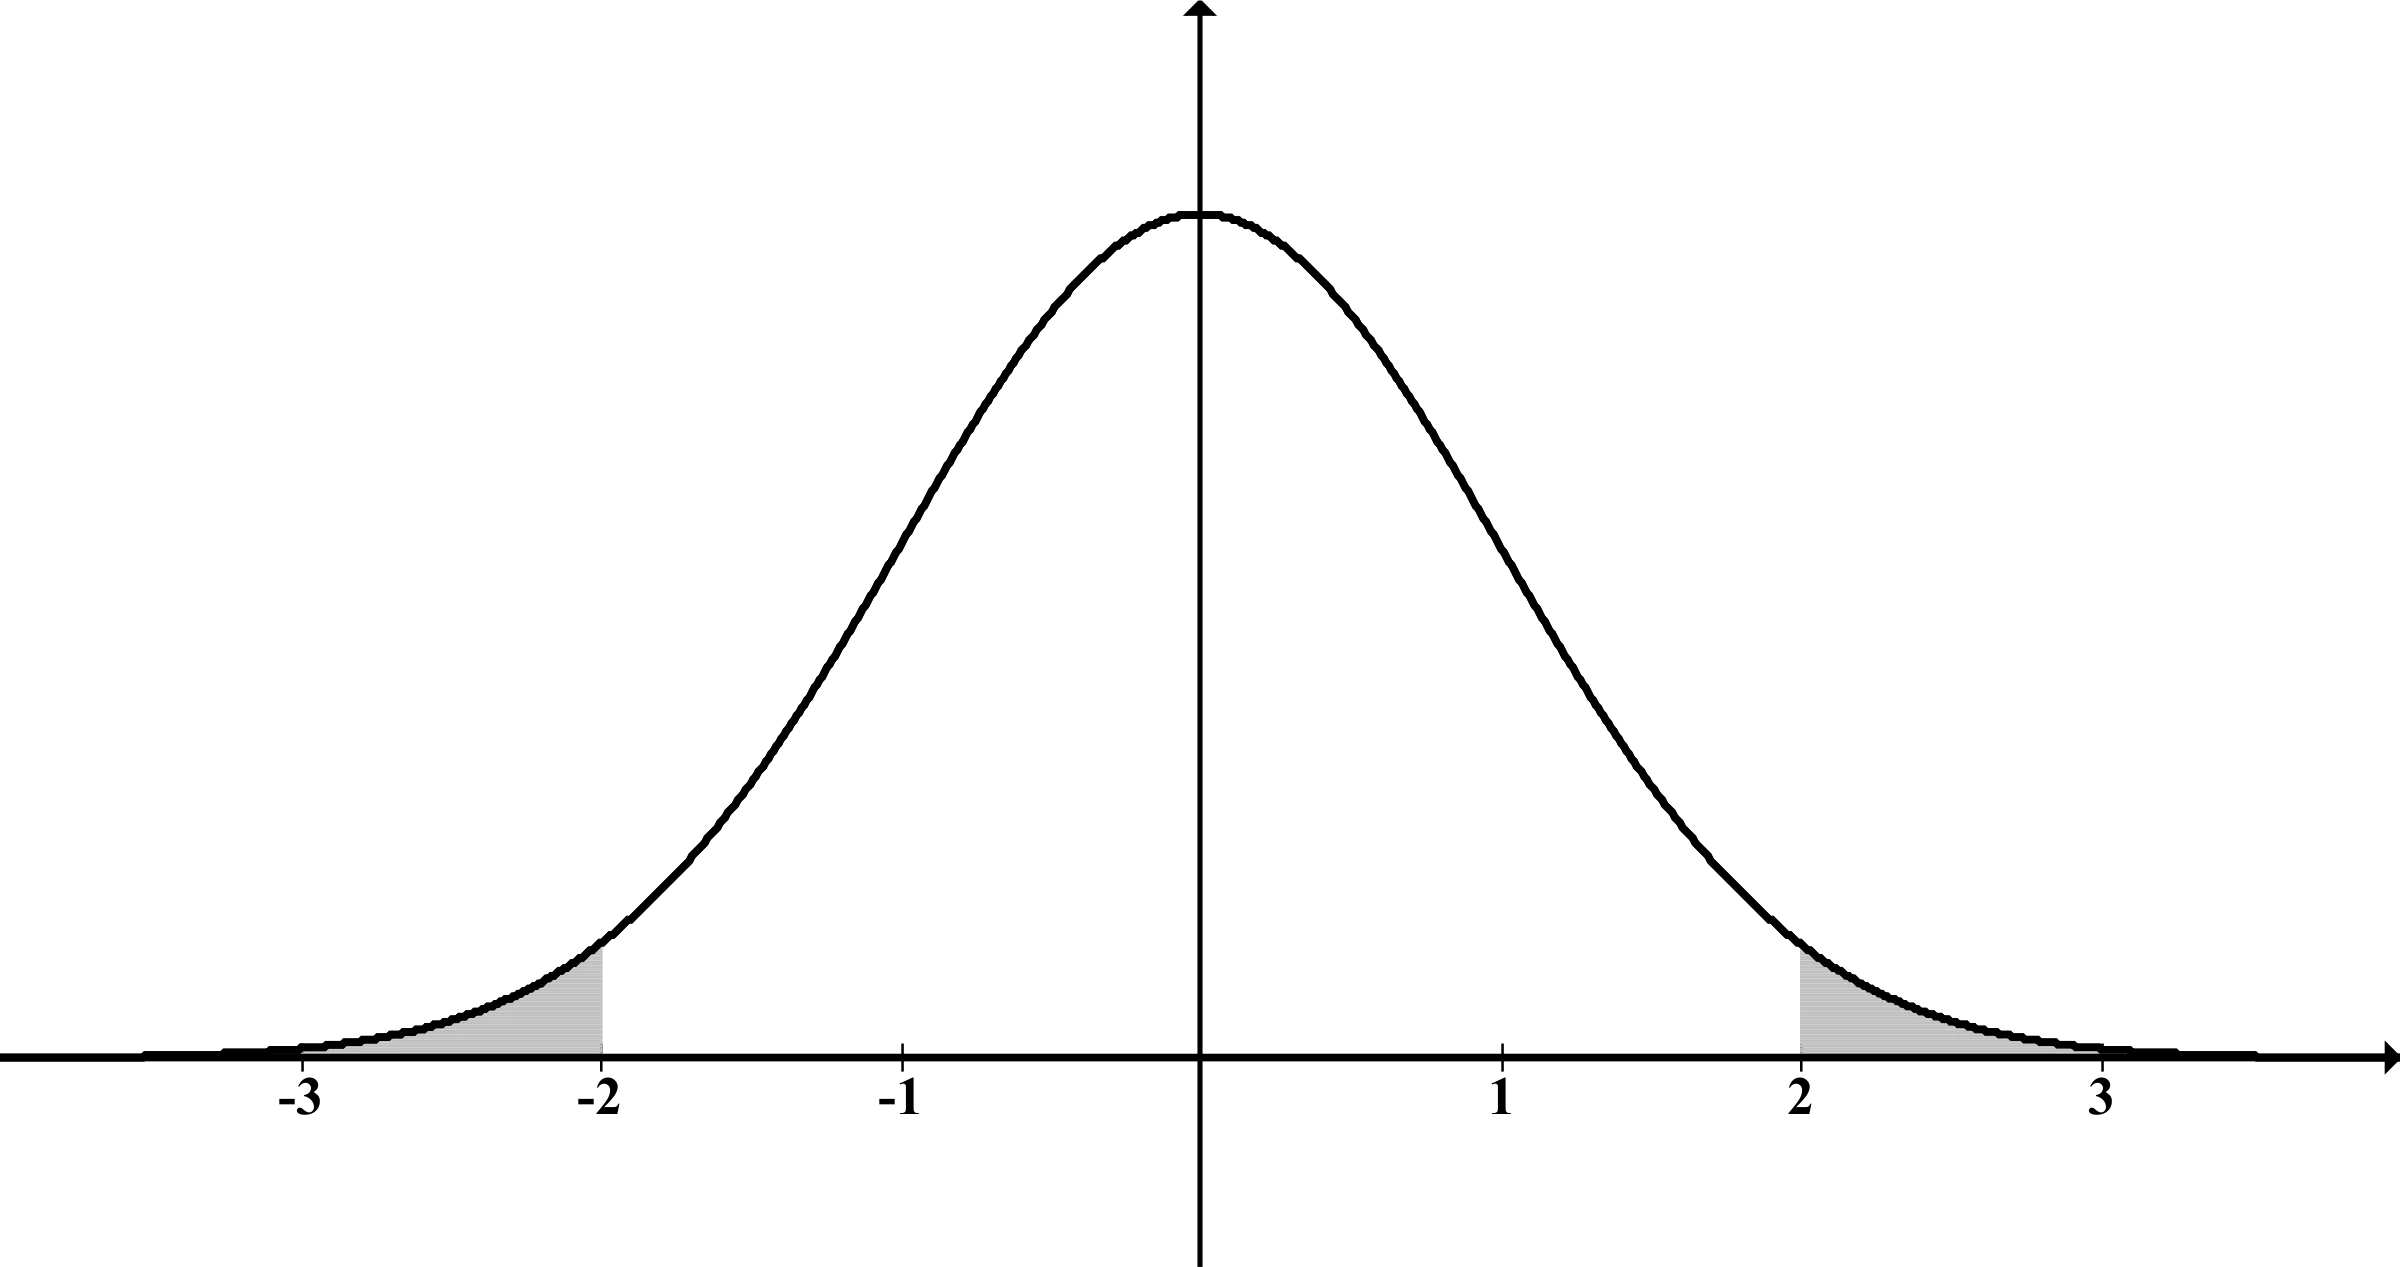 Un grÃ fic simple que mostra una distribuciÃ³ normal o gaussiana